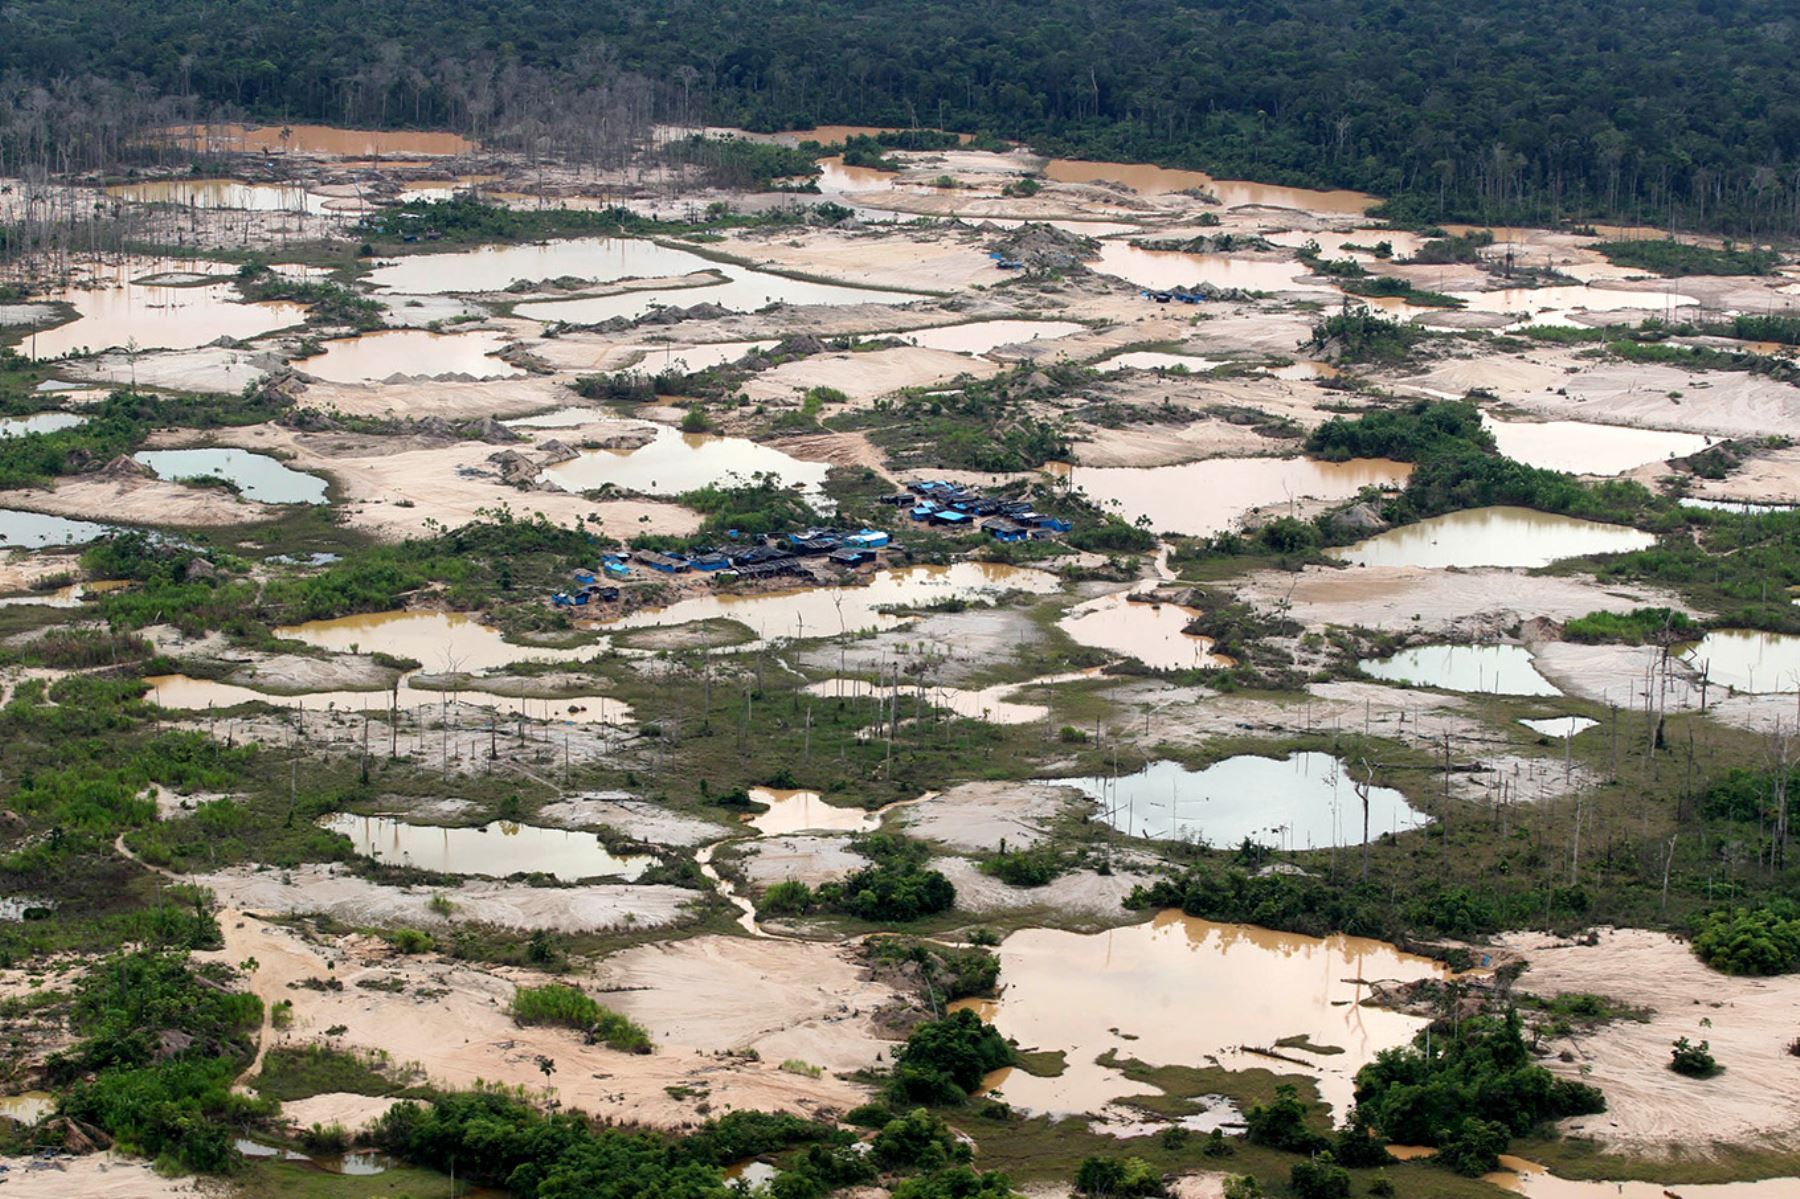 Minería ilegal: Para inicios del 2017, ya existían 759 hectáreas de bosques naturales de la Reserva Nacional de Tambopata afectadas por la minería ilegal.